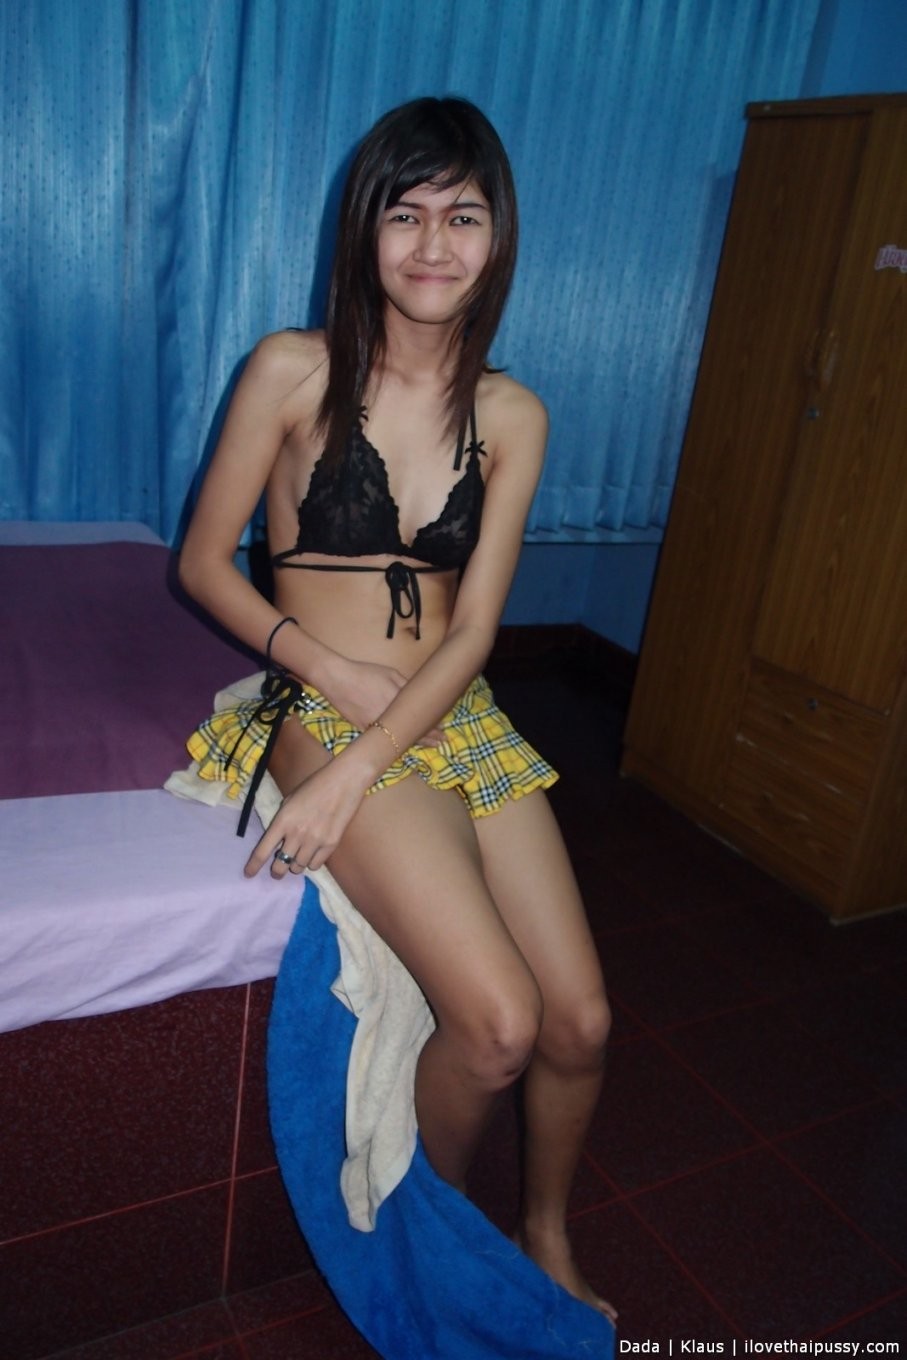 Pute thaïlandaise maigre baisée et crémée par un touriste sexuel suédois salope asiatique
 #68353388